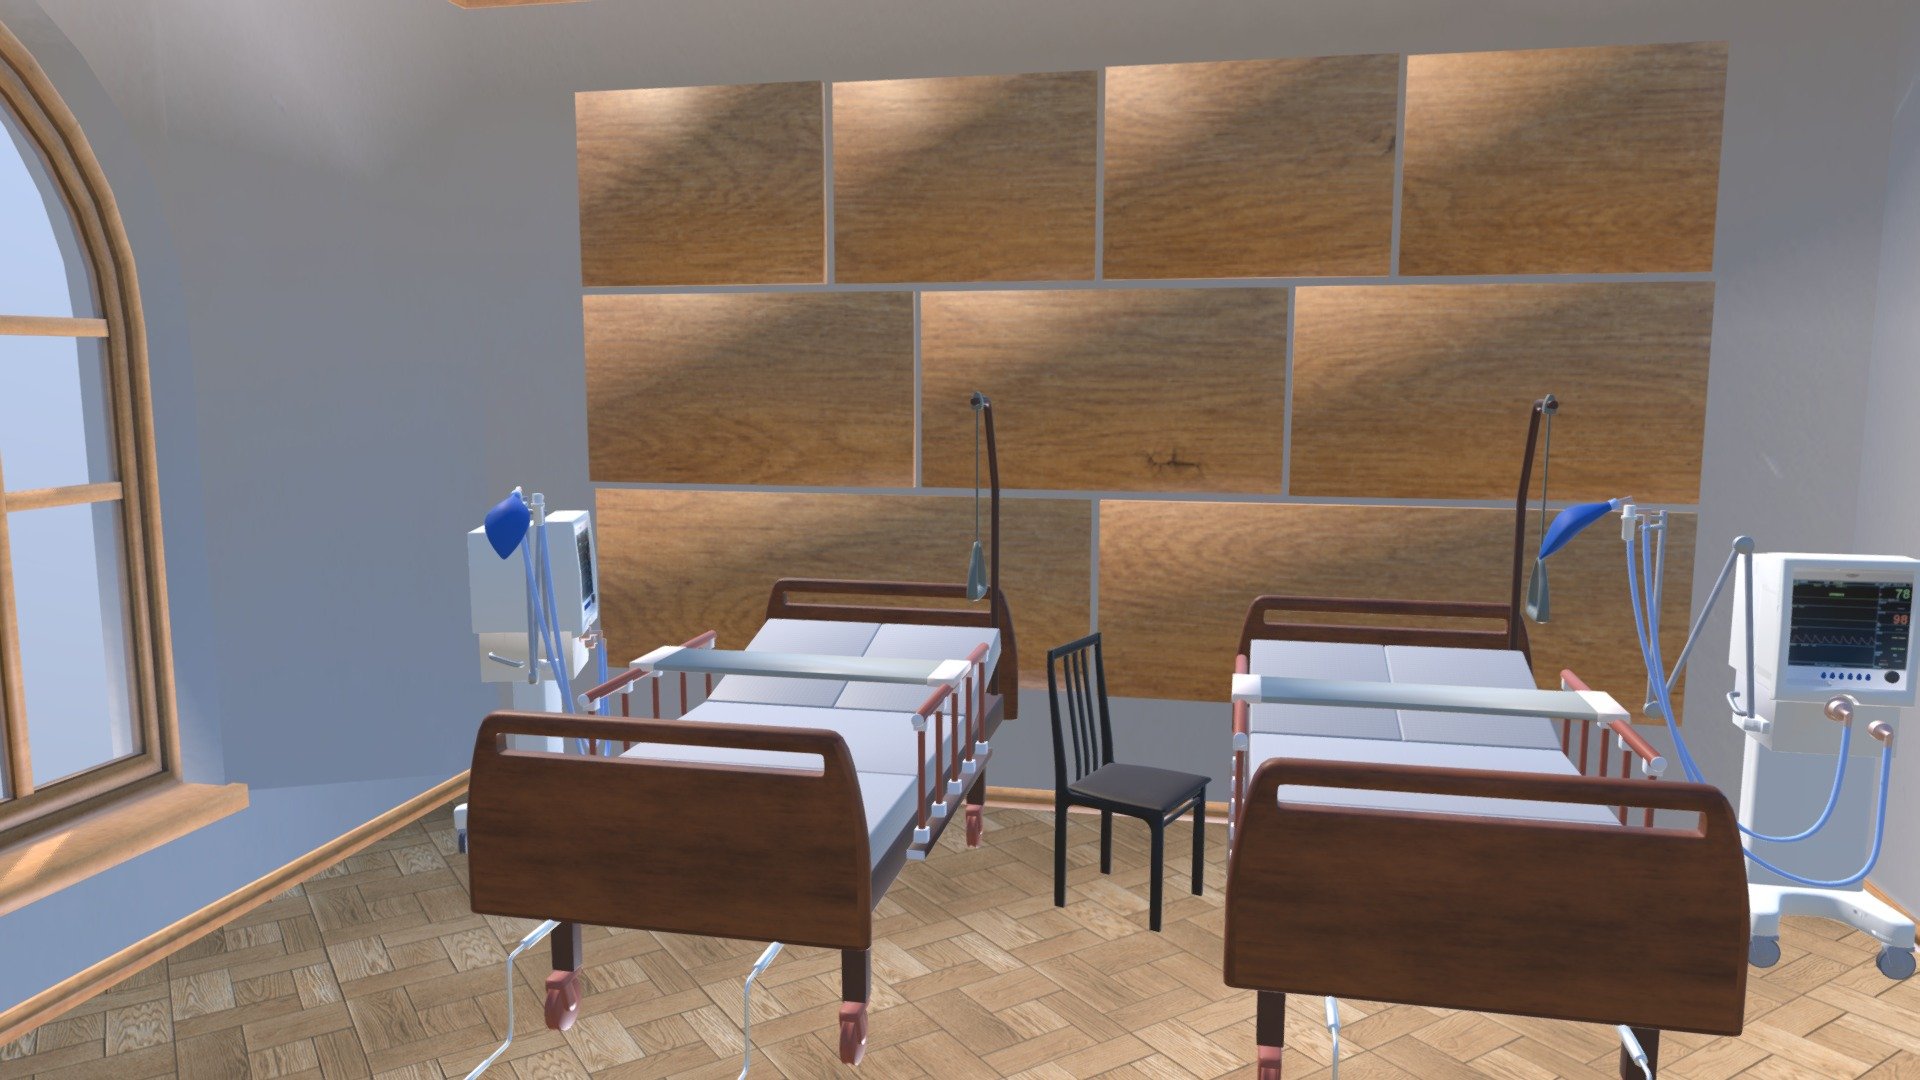 Hospital ward - interior and props